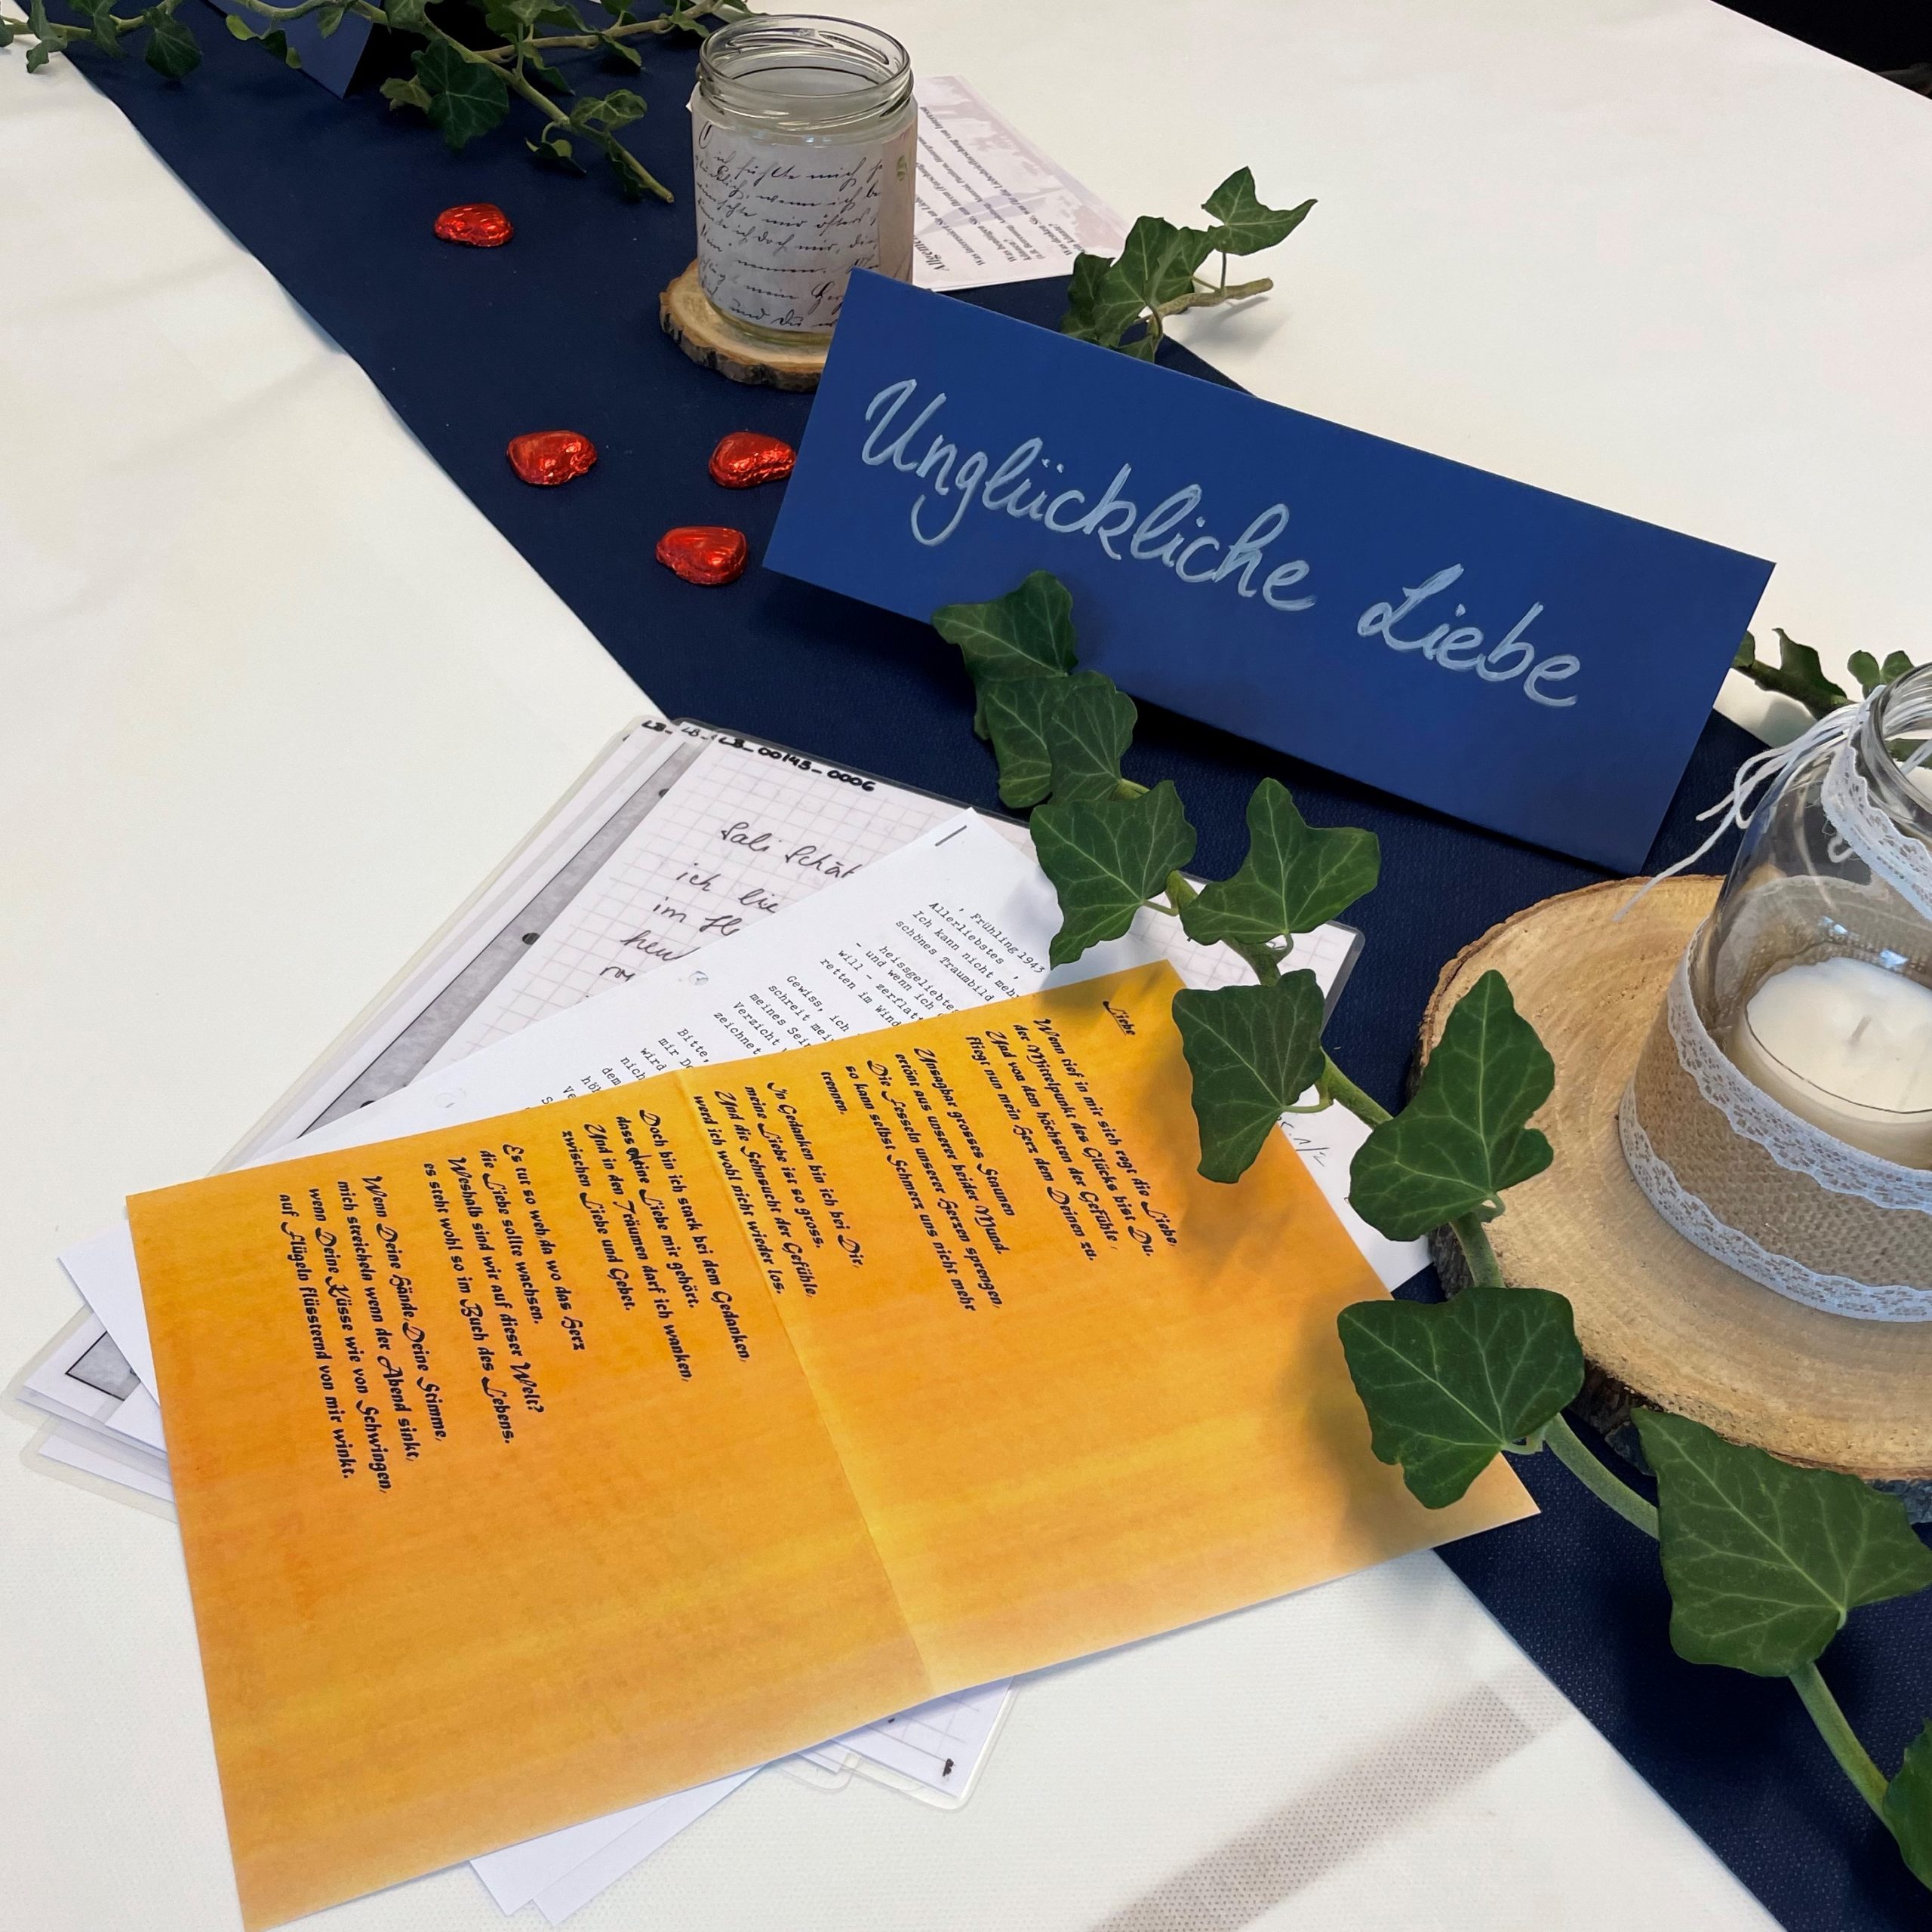 Der Thementisch zu unglücklicher Liebe mit Liebesbriefen, festlich dekoriert mit Efeu, Kerzen und Schokoladenherzen auf blauem Tischläufer